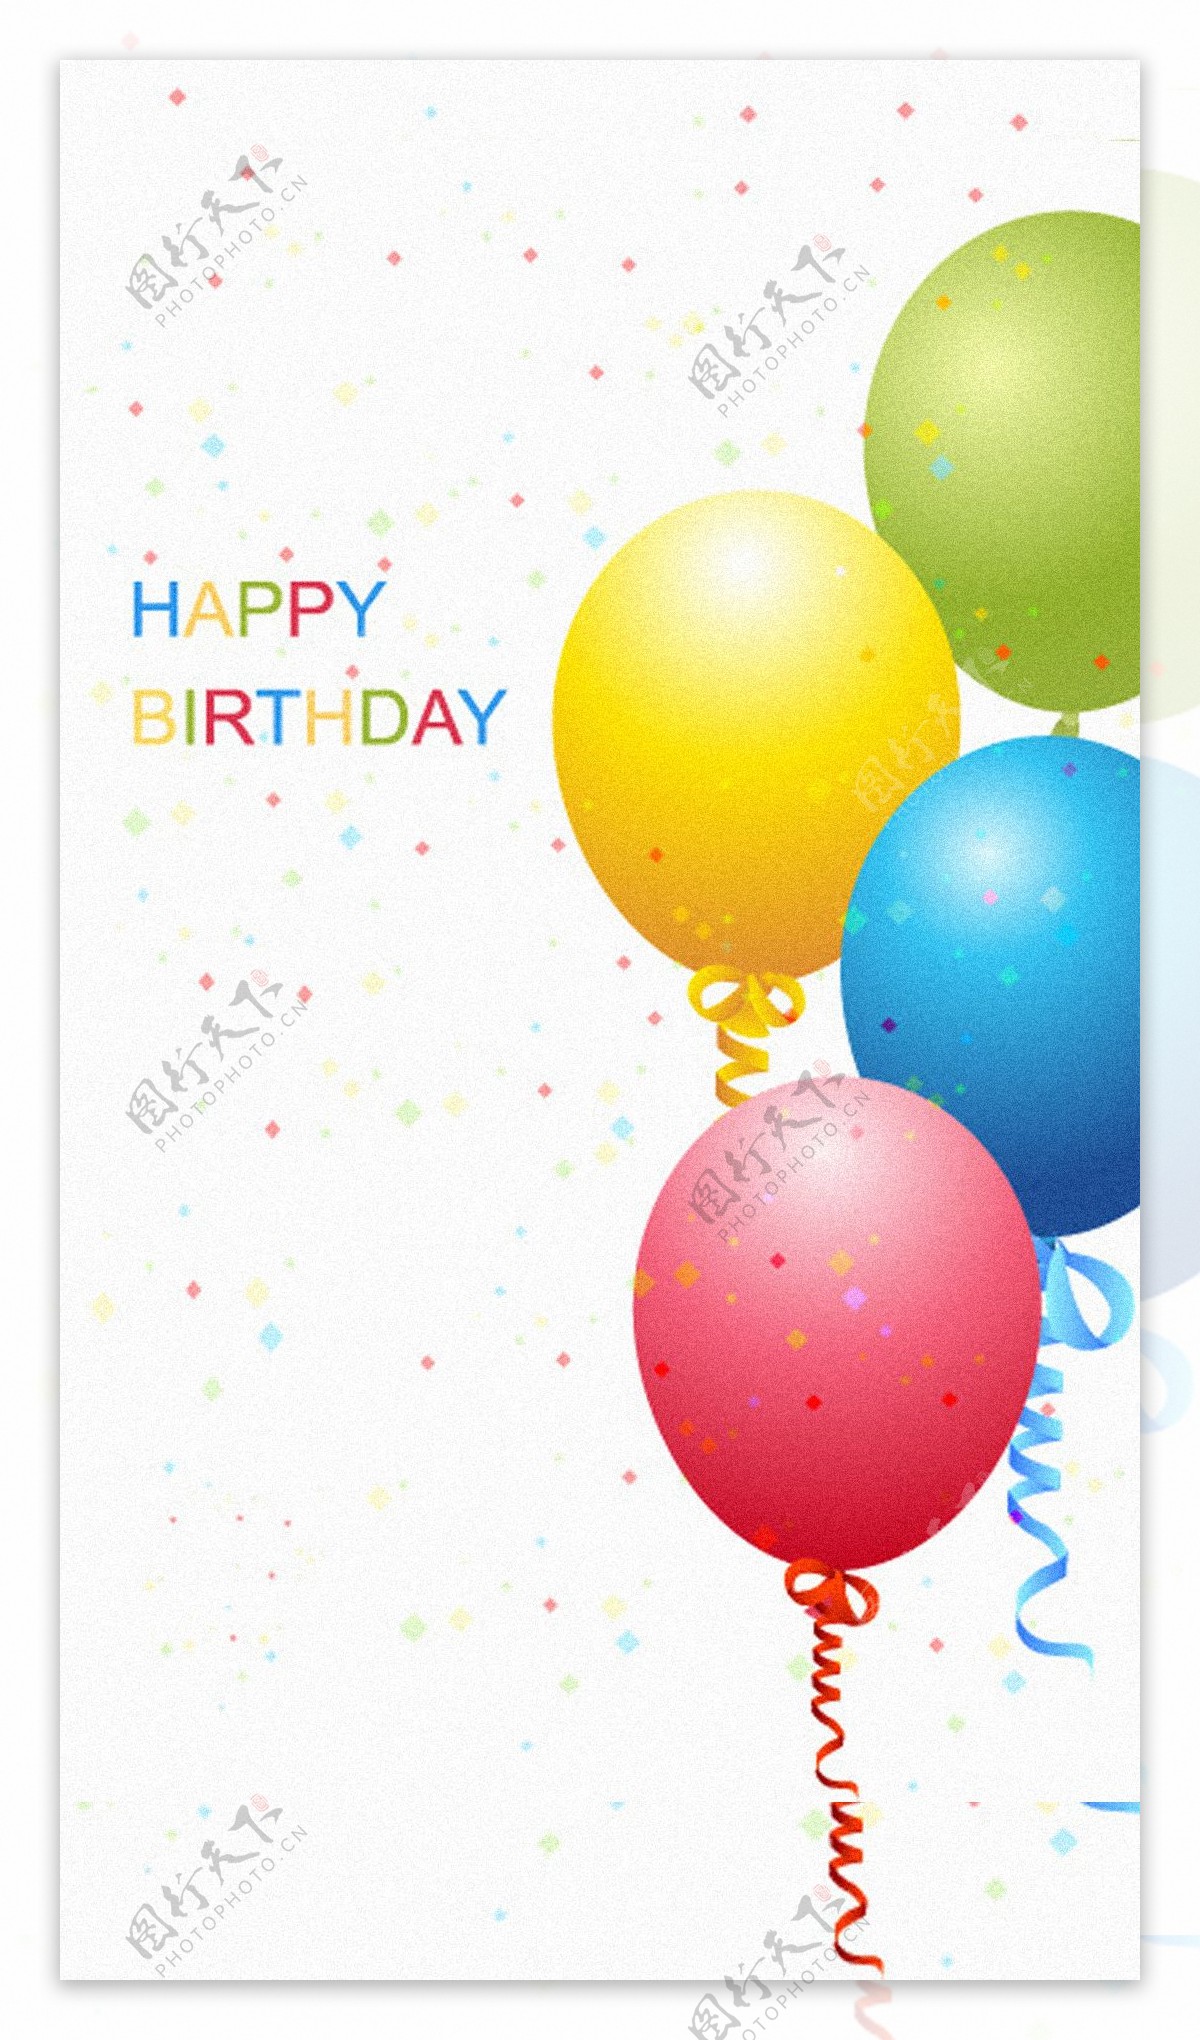 彩色气球生日快乐H5背景素材